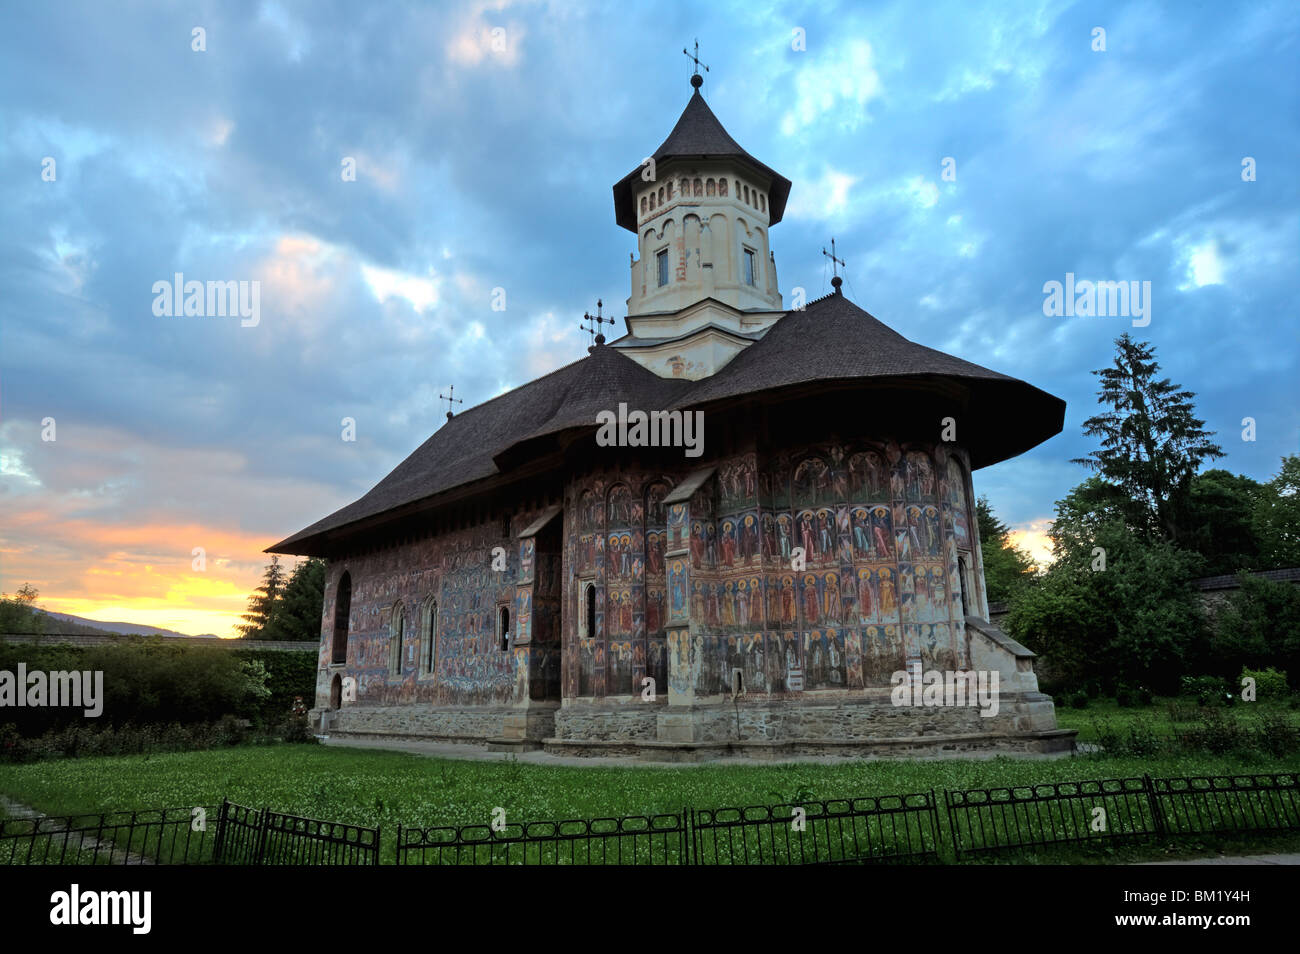 Le monastère de Sucevita, UNESCO World Heritage Site, la Bucovine, Roumanie, Europe Banque D'Images